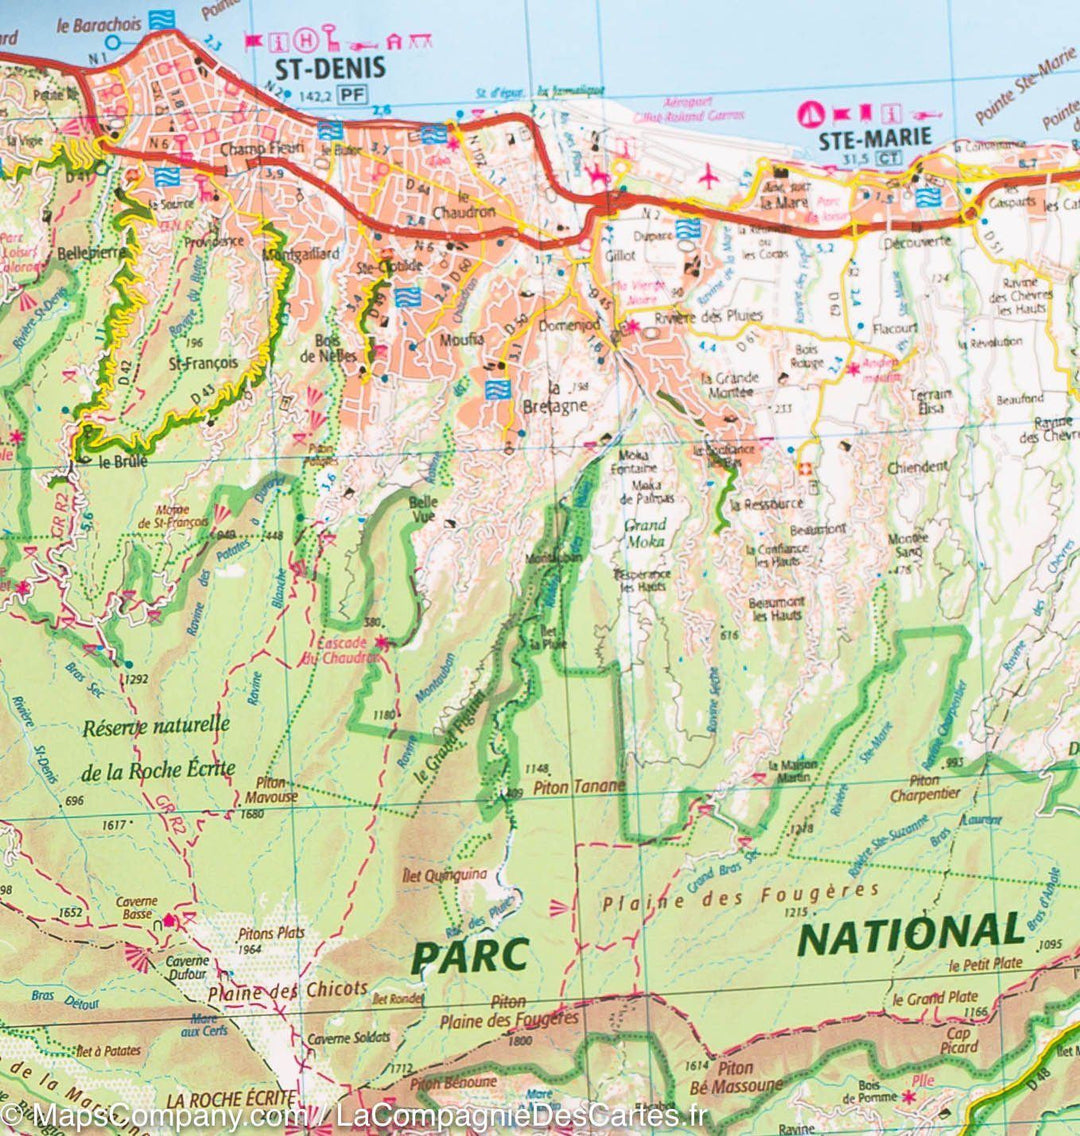 Carte murale plastifiée - Ile de la Réunion | IGN carte murale grand tube IGN 